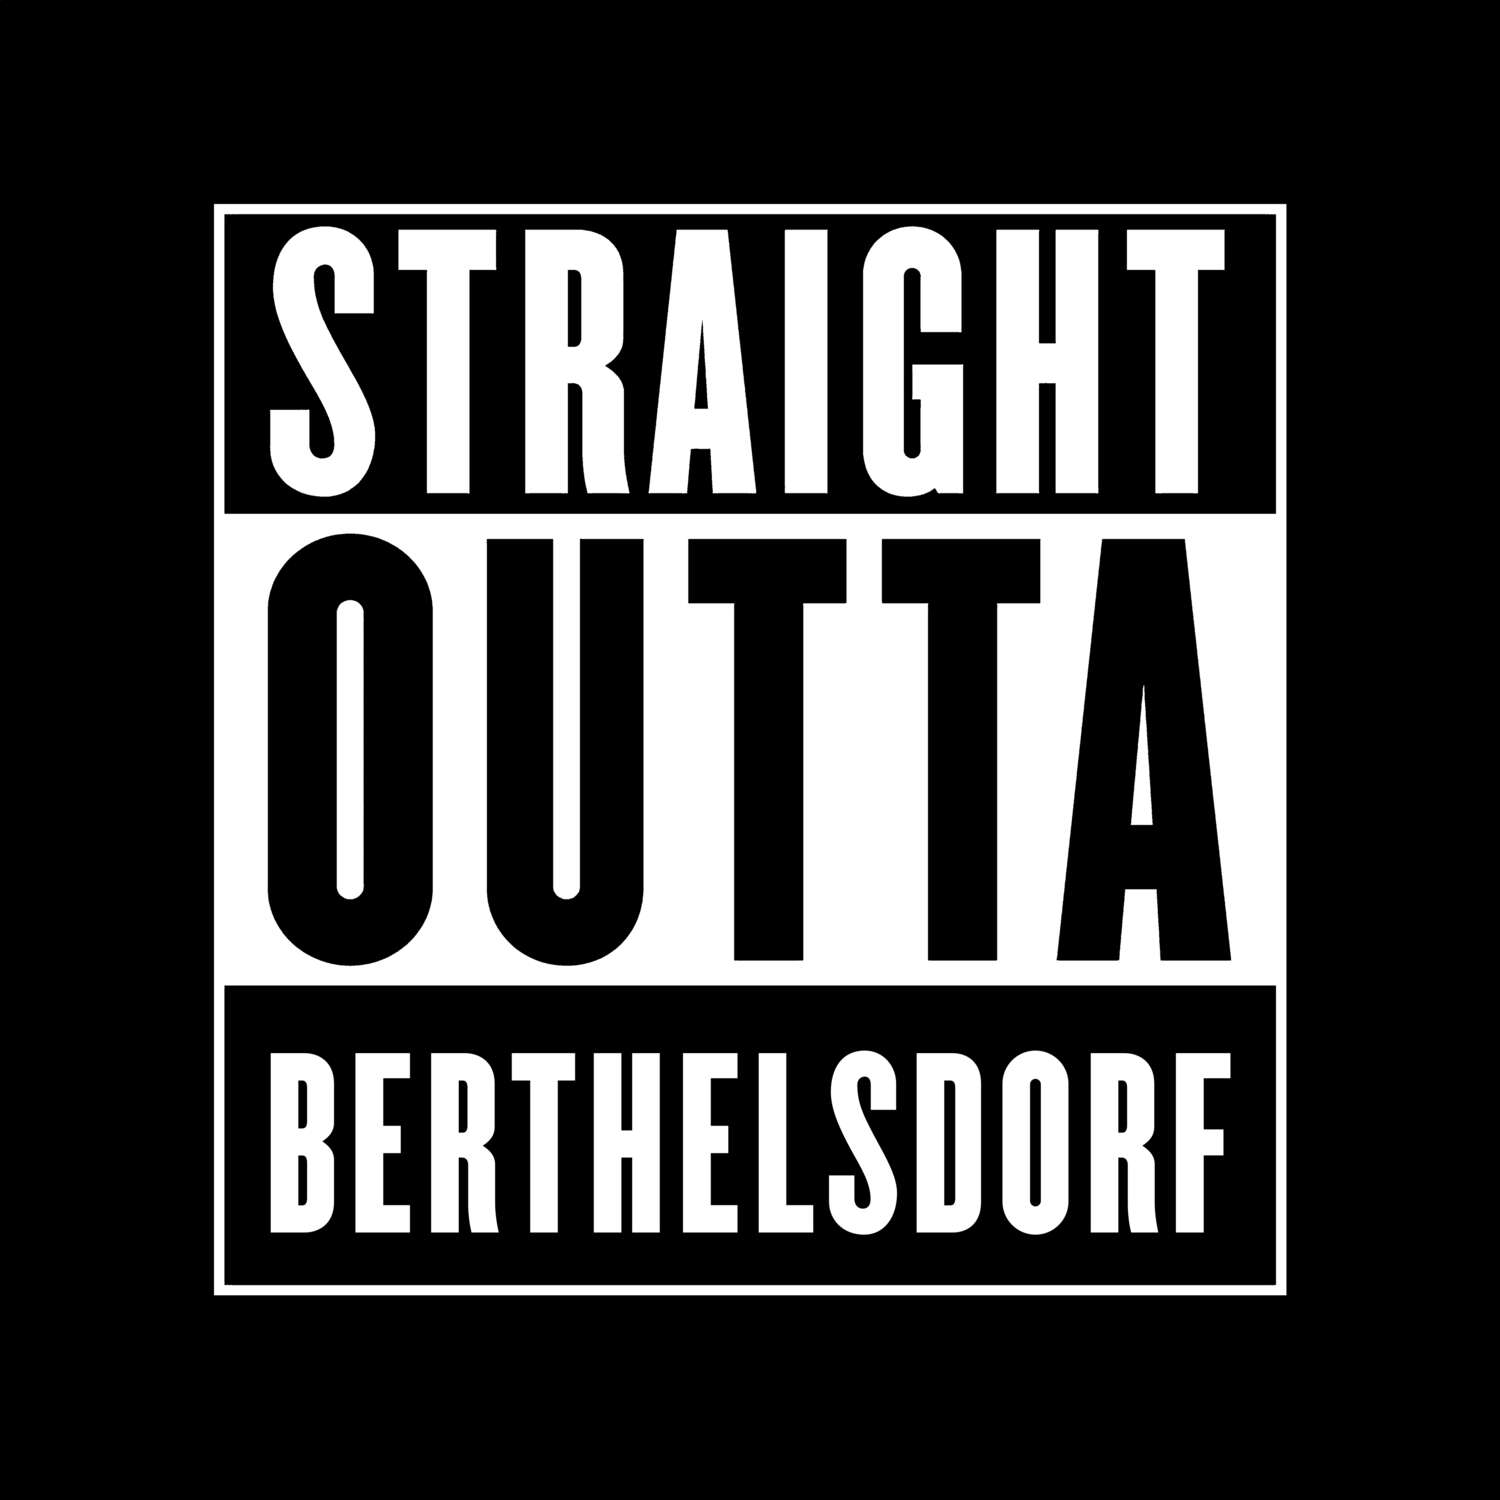 Berthelsdorf T-Shirt »Straight Outta«